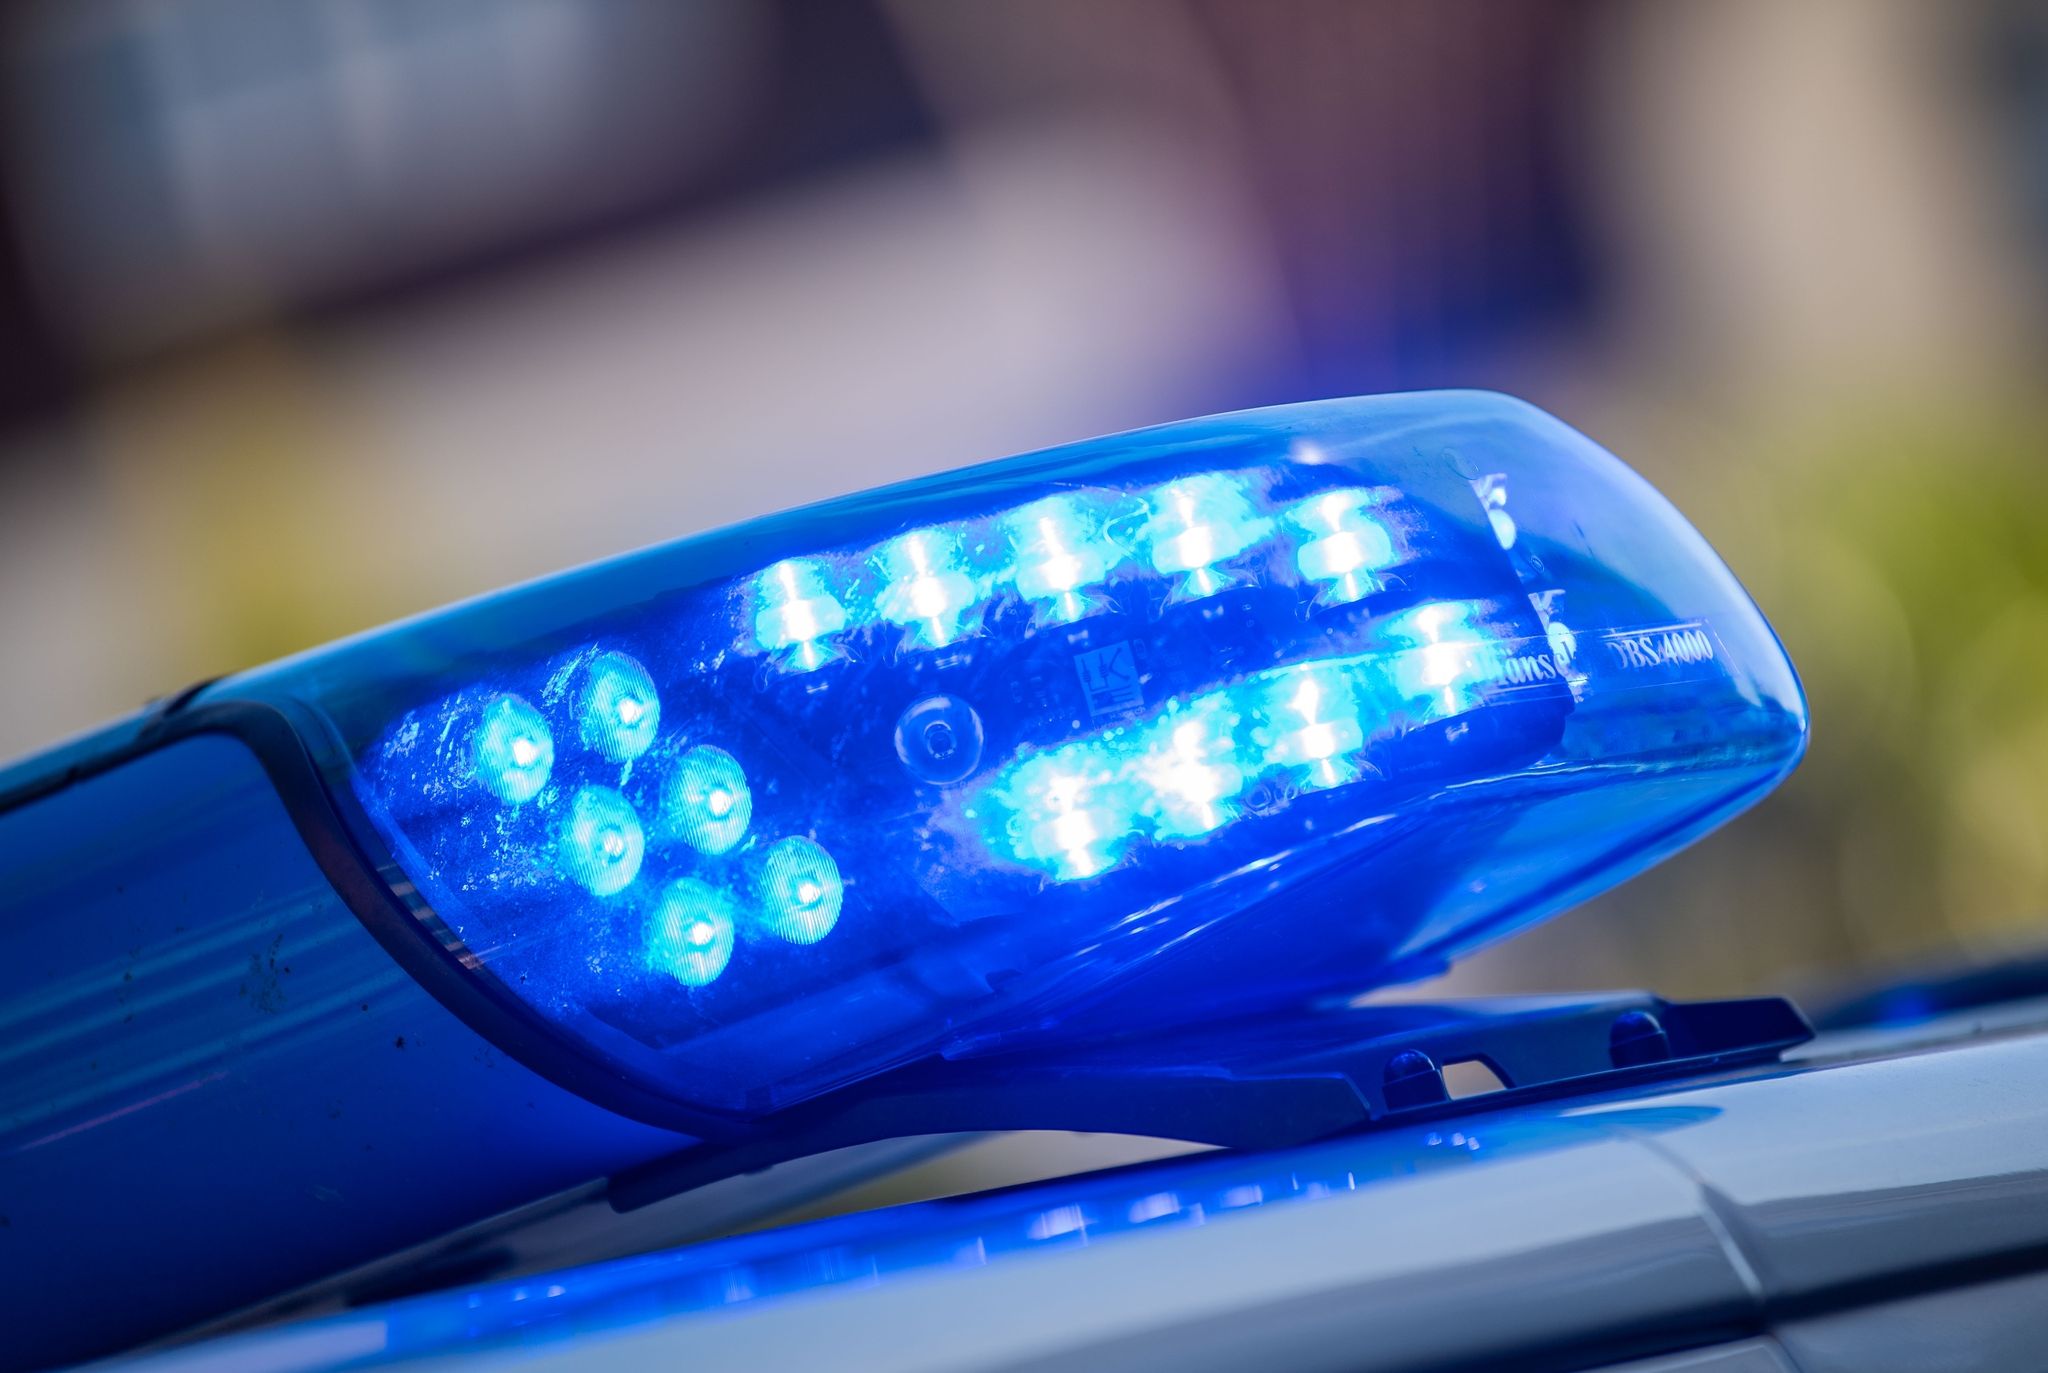 Schwangere in Leverkusen tödlich verletzt – Festnahme